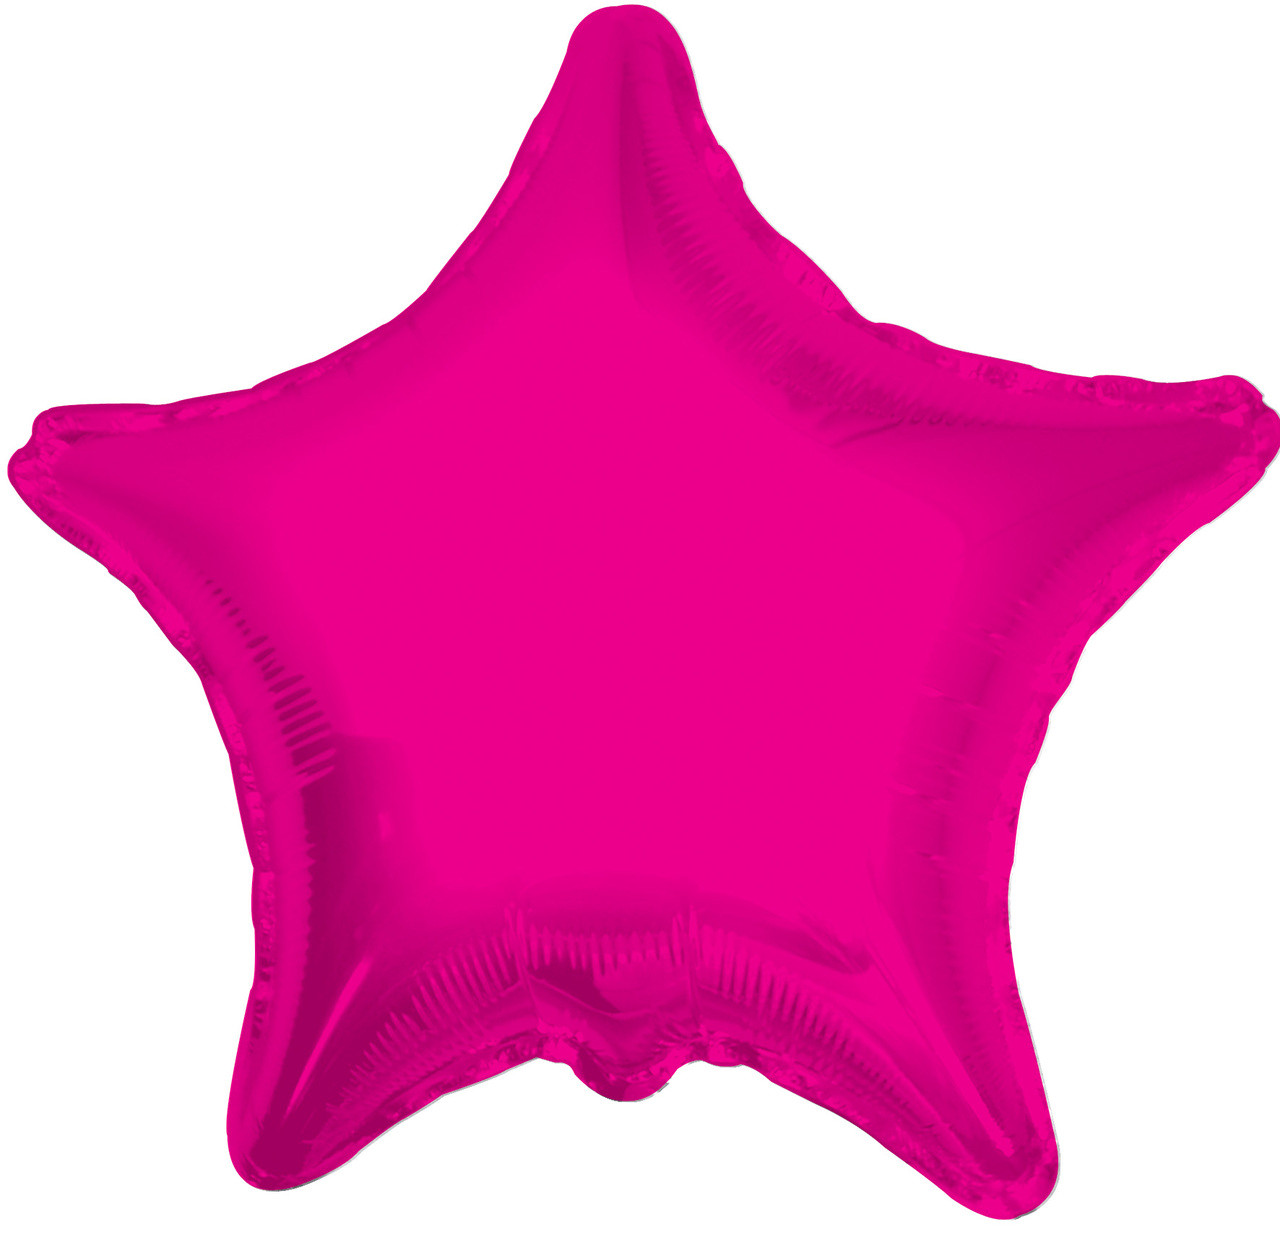 19" Metallic Hot Pink Star Balloons #17862-18